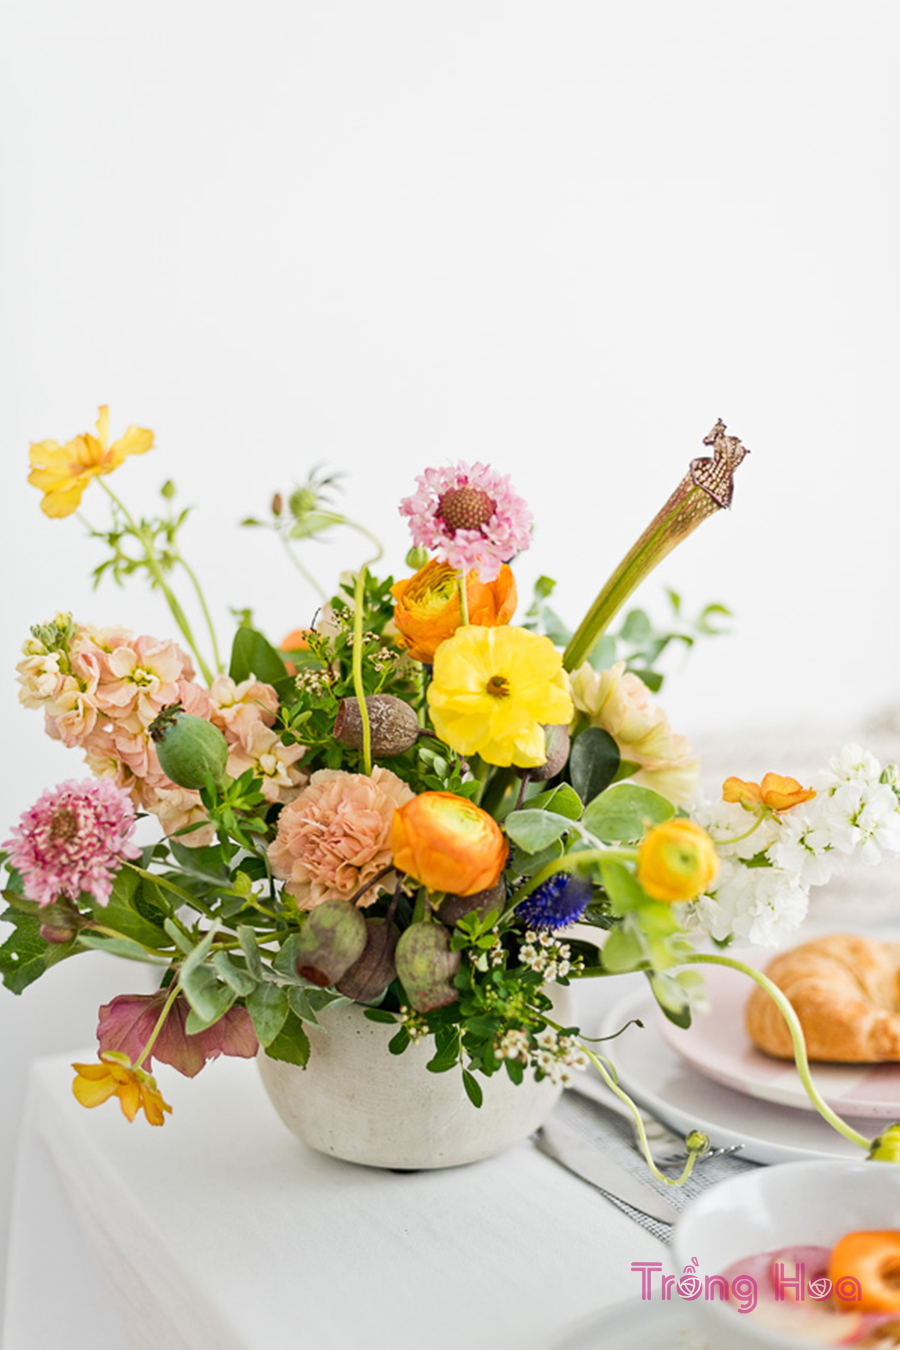 8 Mẹo sắp xếp hoa dễ dàng và công thức cắm hoa hoàn hảo